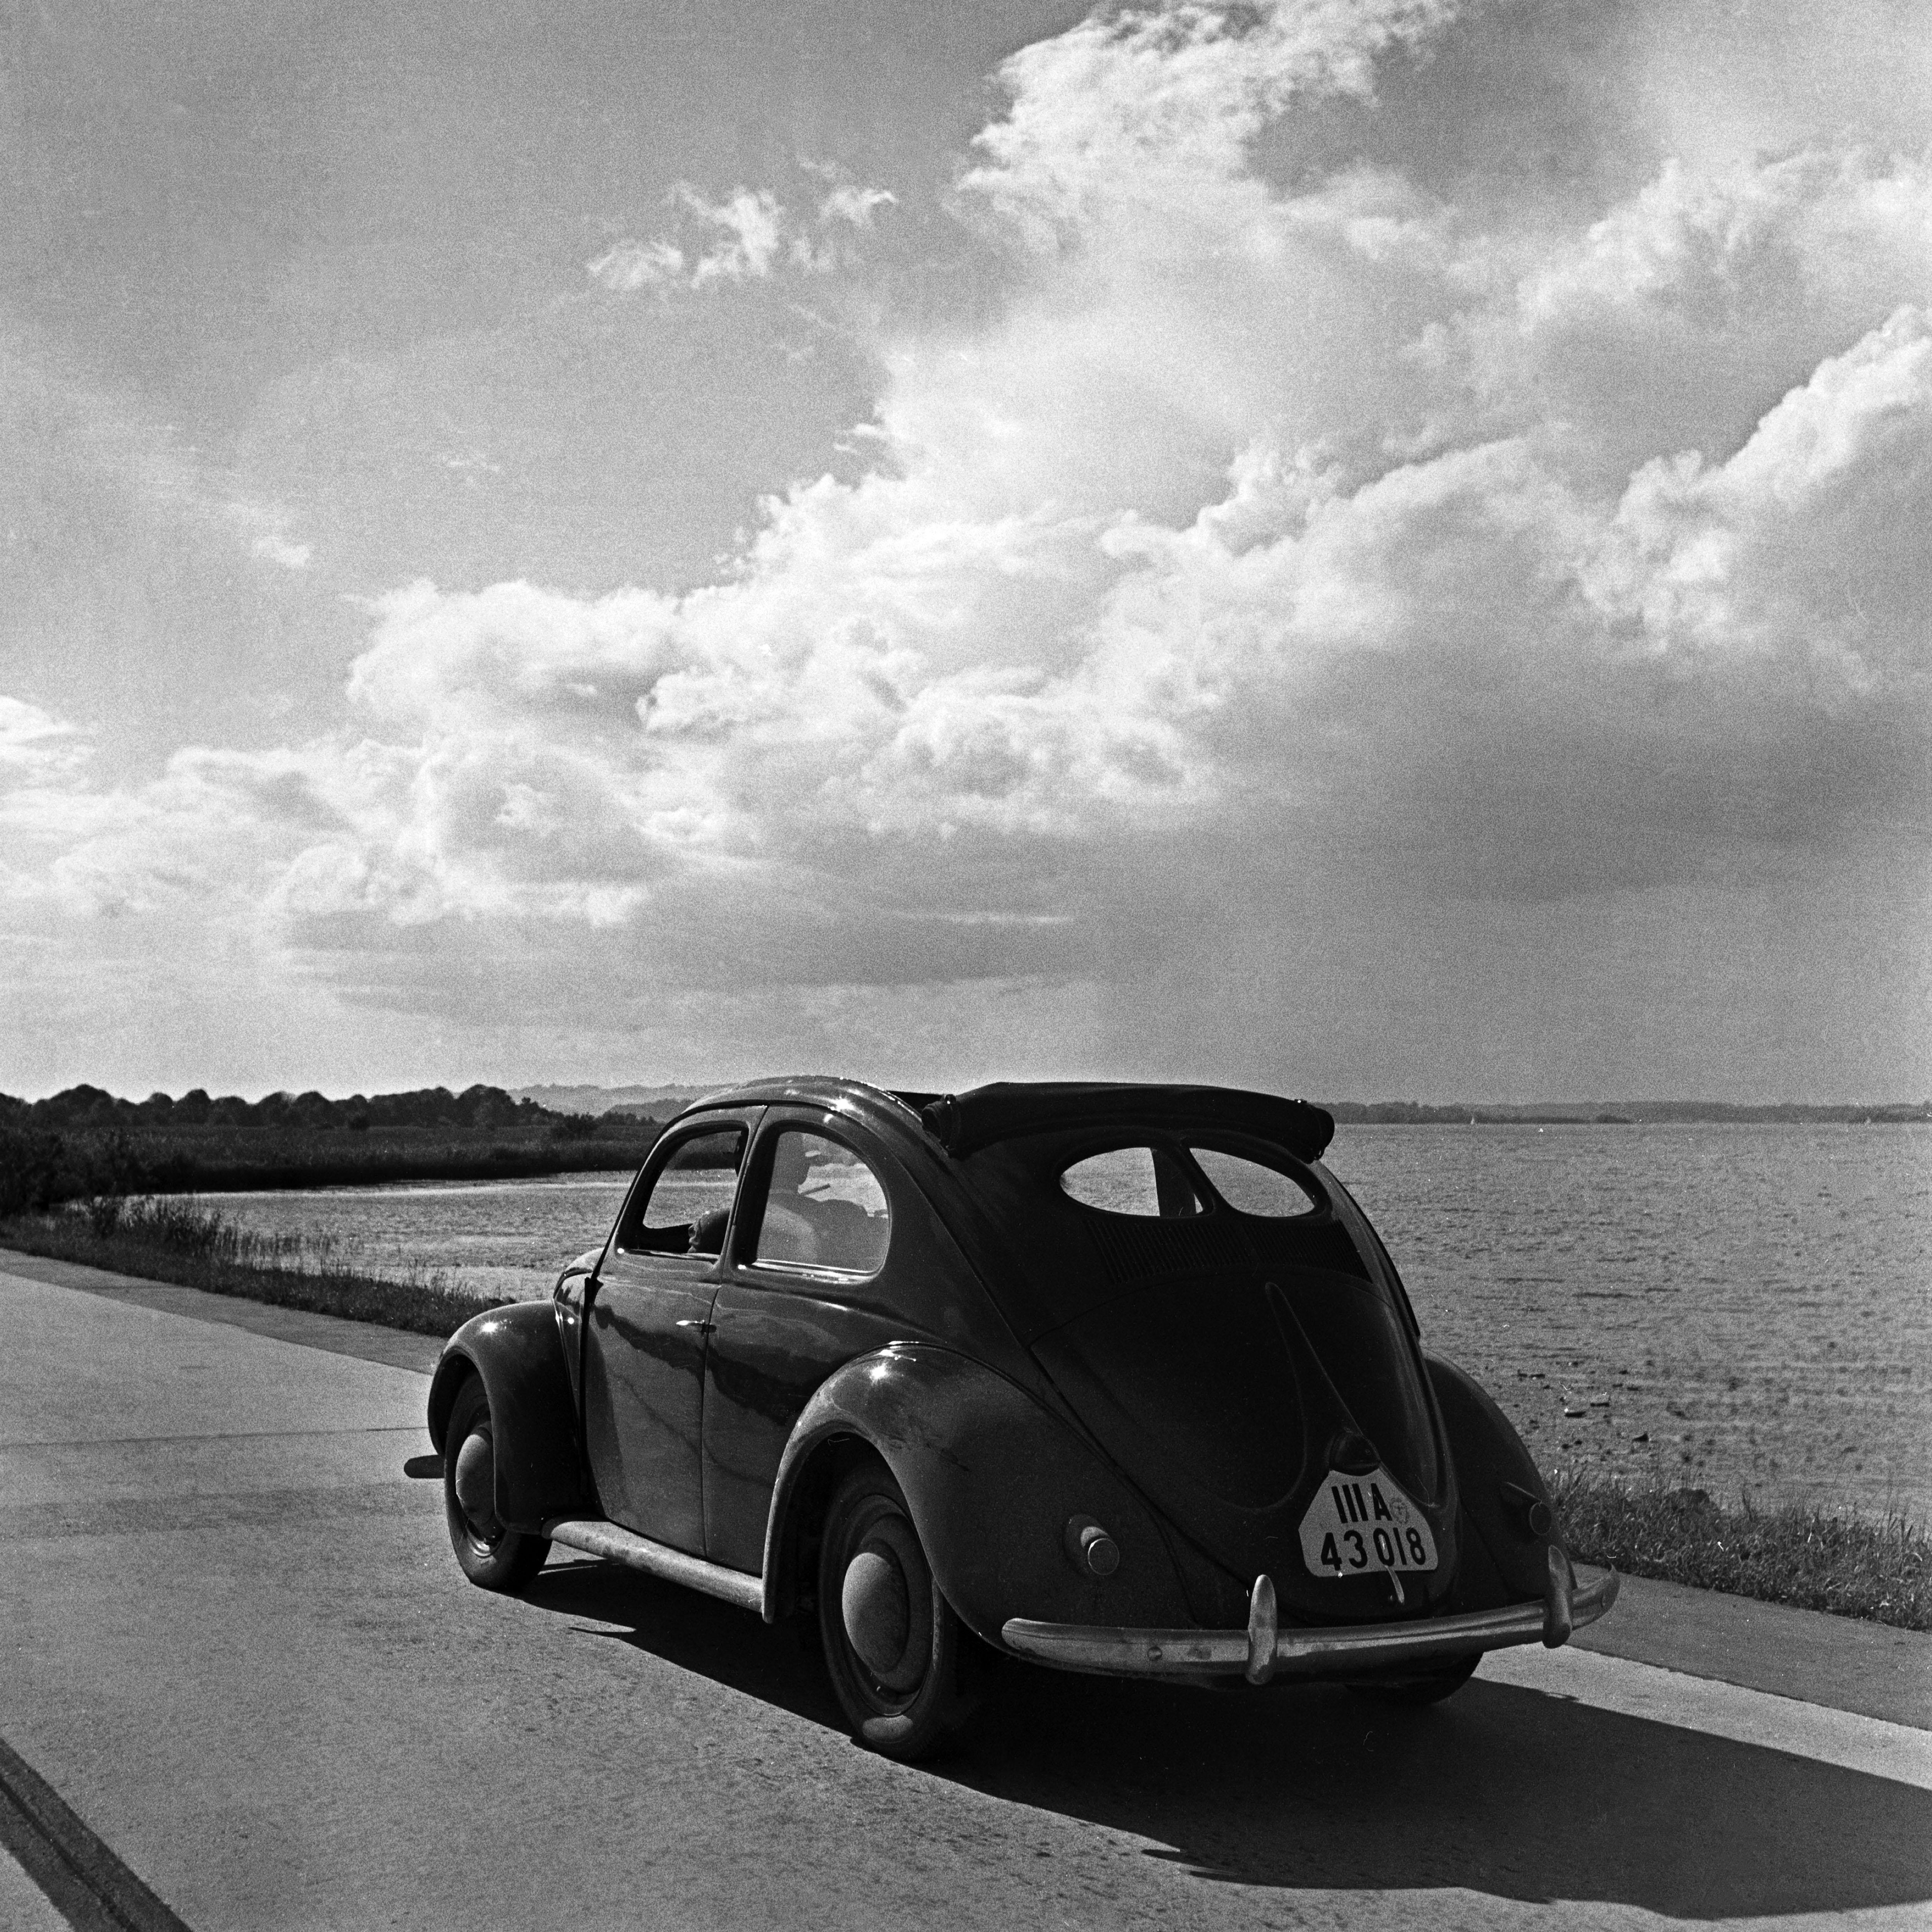 Karl Heinrich Lämmel Black and White Photograph – Volkswagen Käfer auf den Straßen neben dem Meer, Deutschland 1939 Später gedruckt 